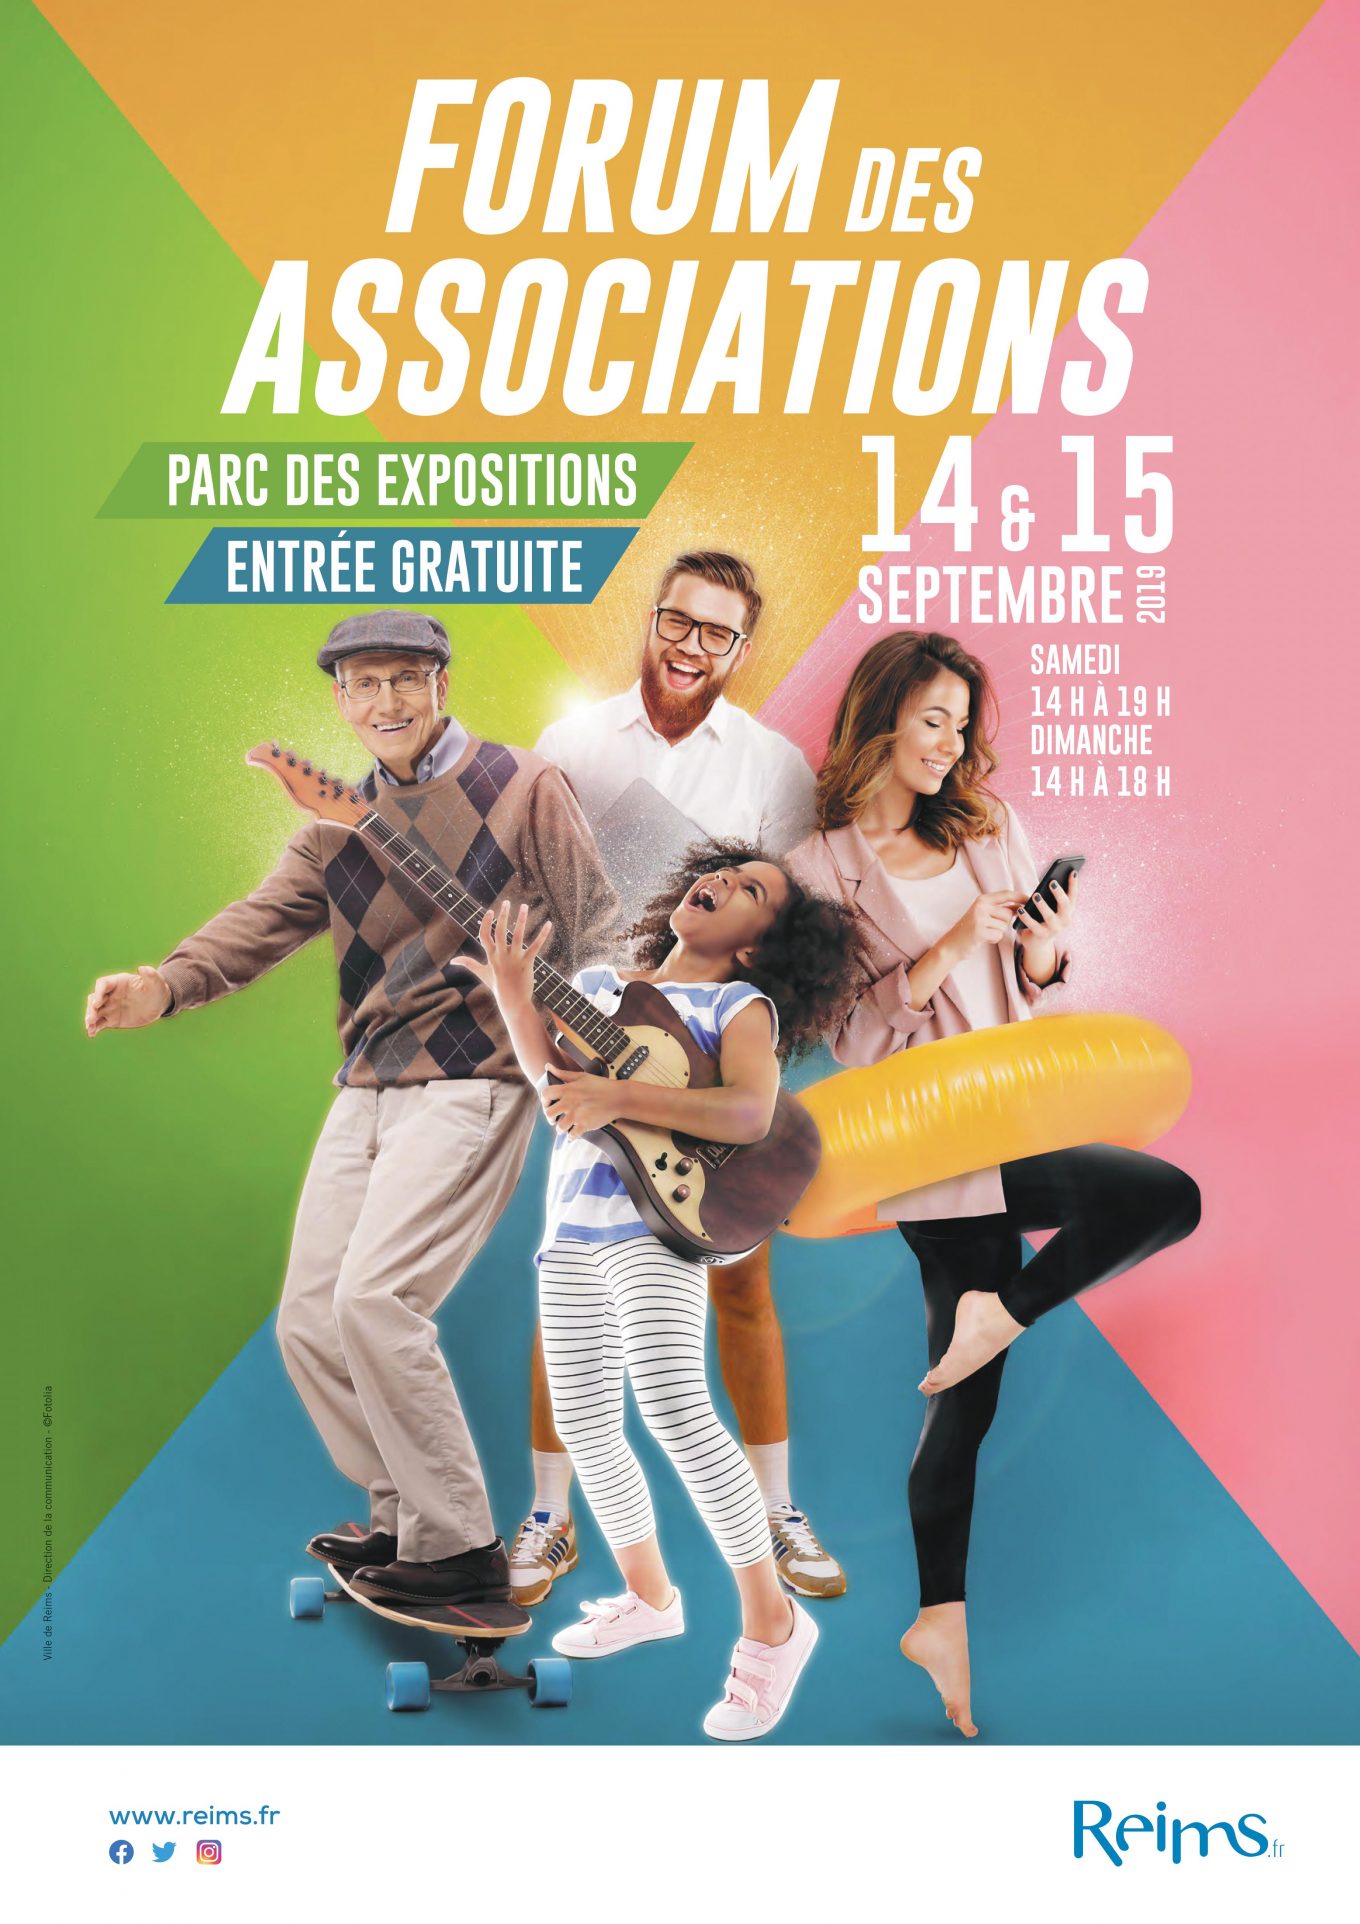 Forum des associations - Reims